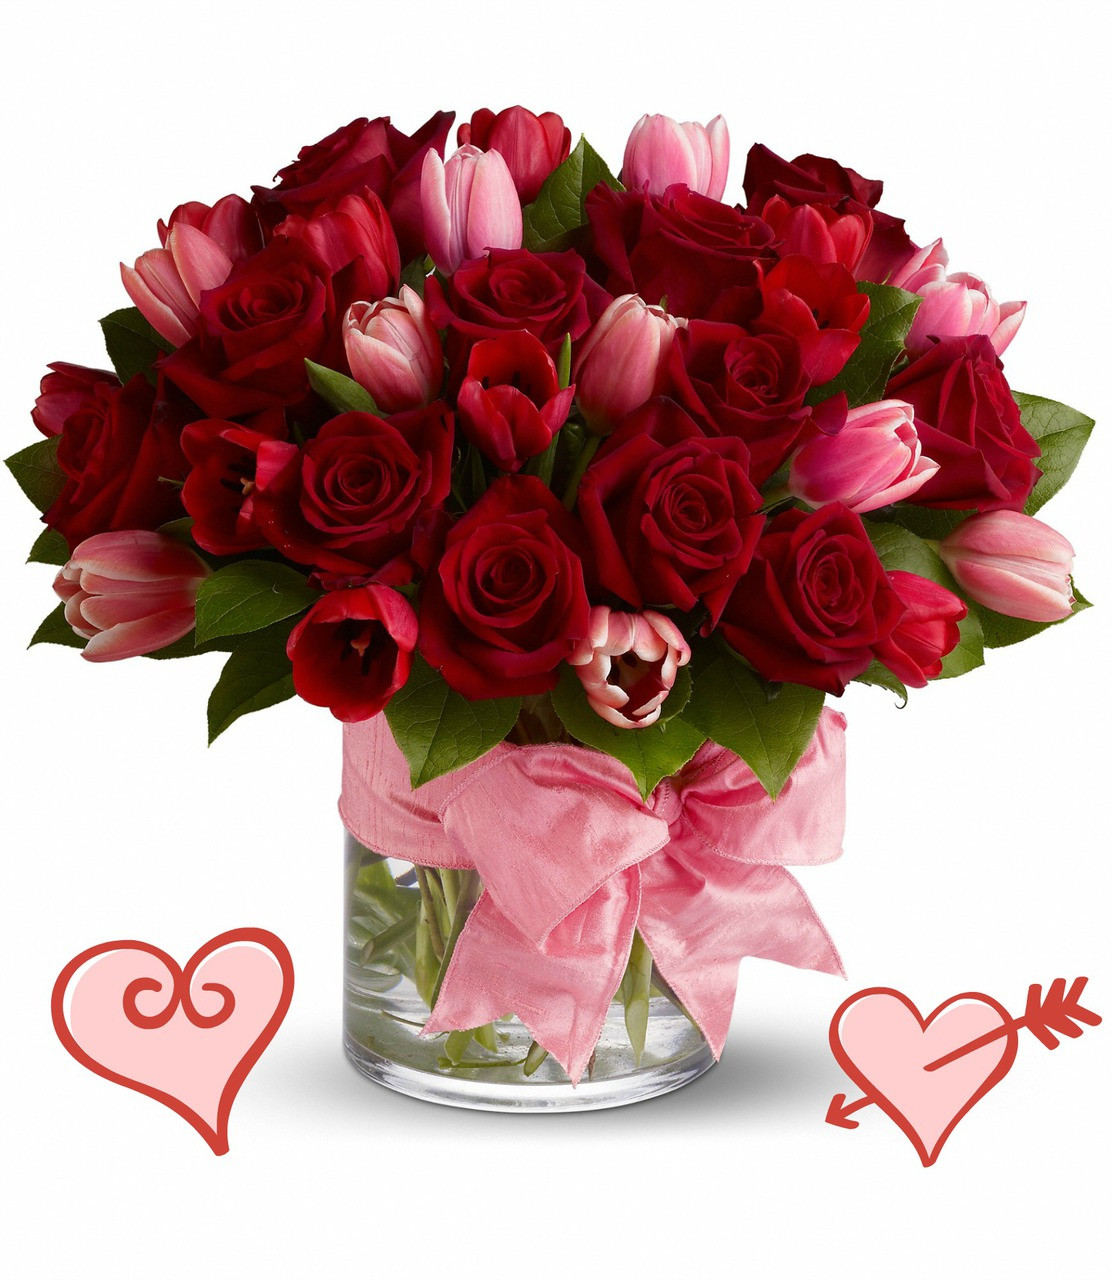 Menurut Survei Perempuan Gak Suka Dikasih Bunga di Hari Valentine 